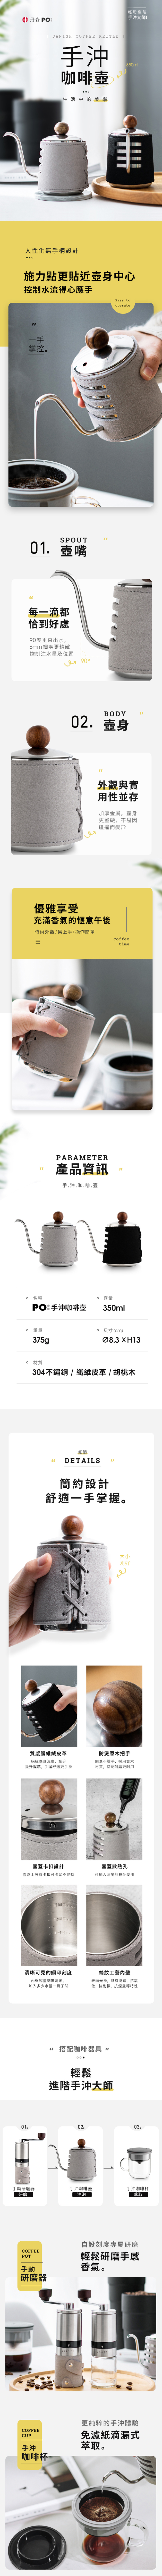 手沖細嘴咖啡壺350ml(New)